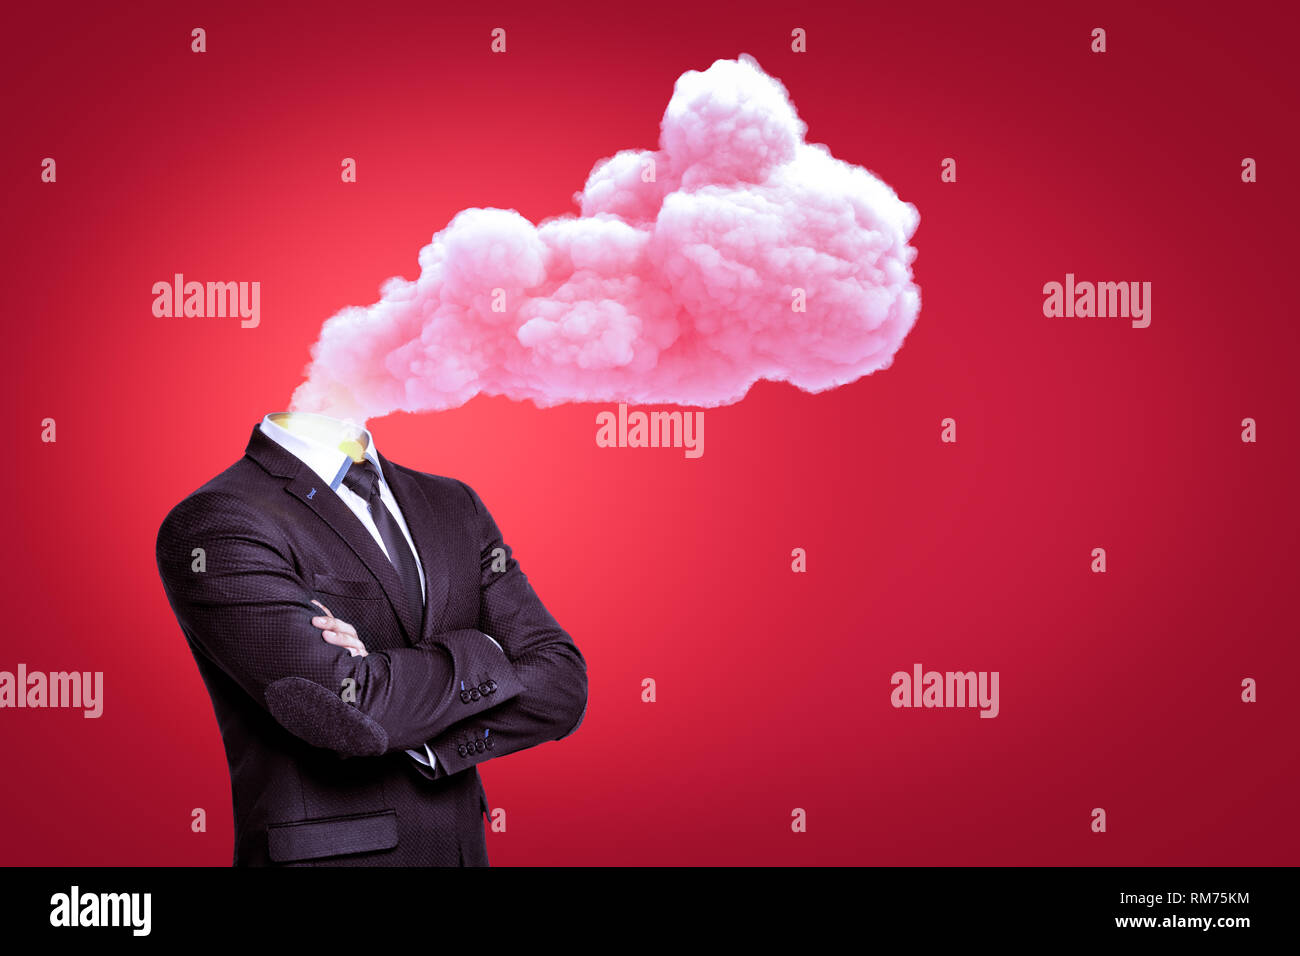 Businessman avec un nuage de fumée rose au lieu de tête sur fond rouge Banque D'Images